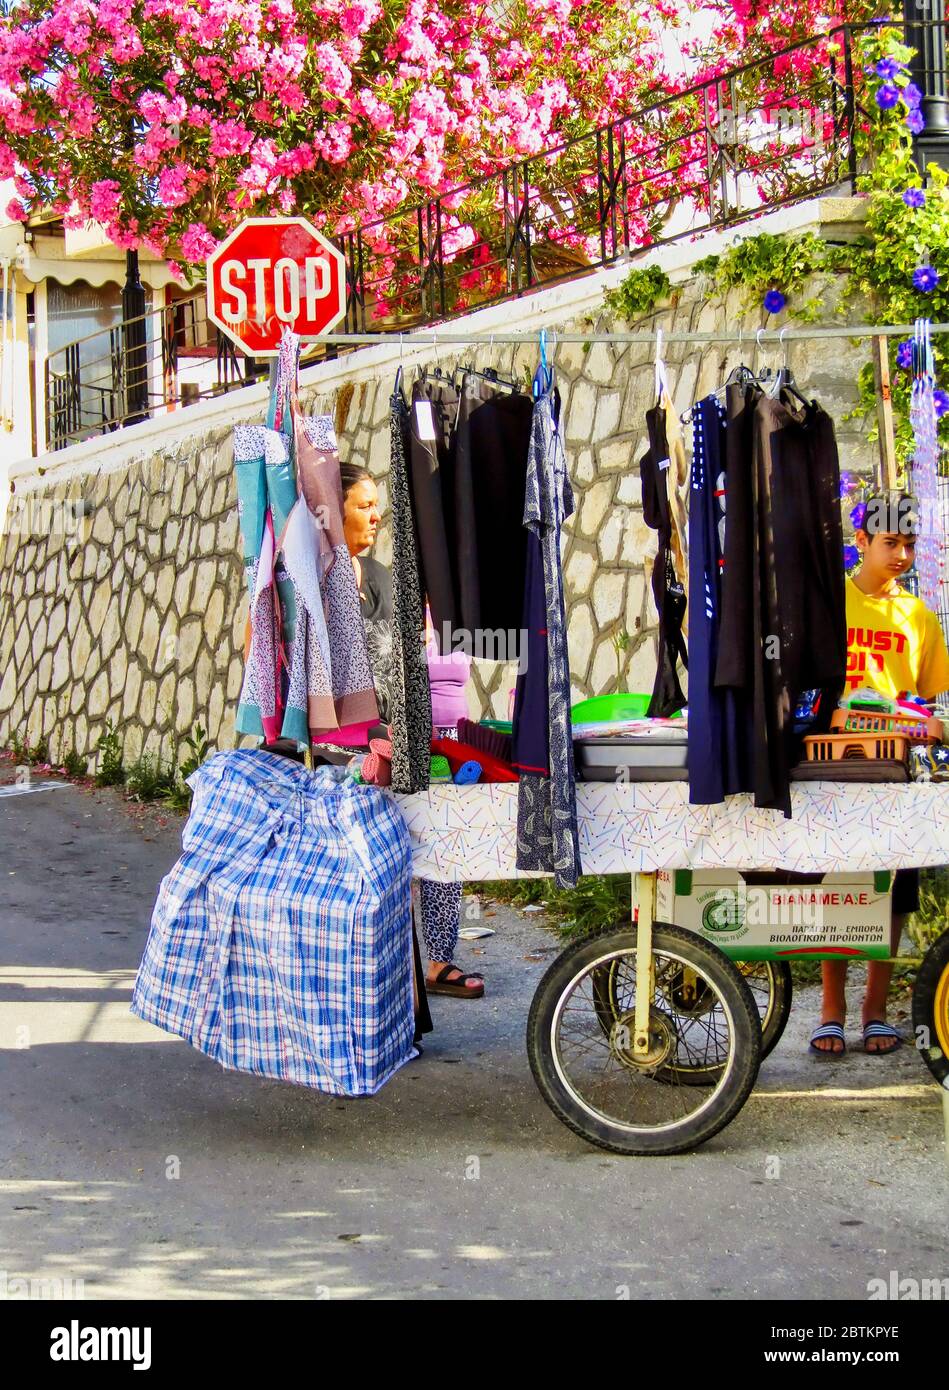 Ancien Vender de rue avec chariot et vêtements mobiles, Crète, Grèce Banque D'Images